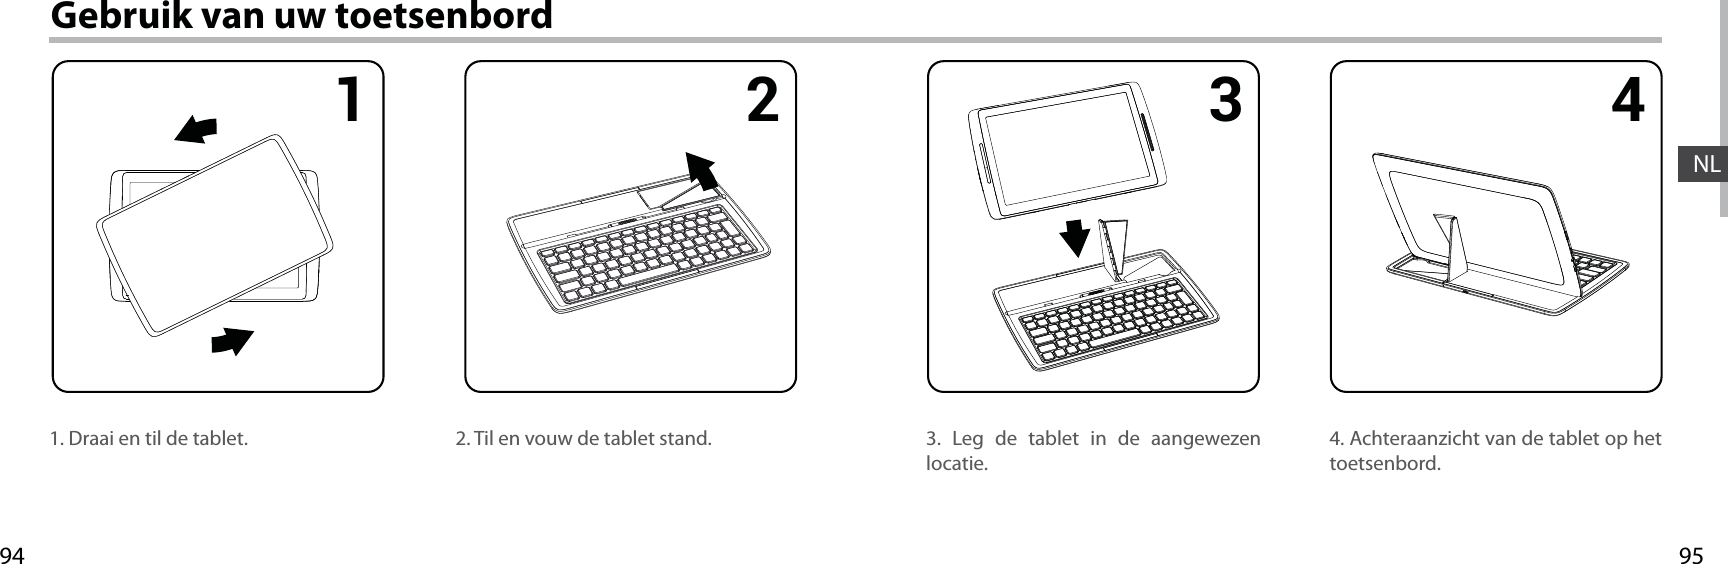 95941 2 3 4NLGebruik van uw toetsenbord1. Draai en til de tablet. 4. Achteraanzicht van de tablet op het toetsenbord.3. Leg de tablet in de aangewezen locatie.2. Til en vouw de tablet stand.